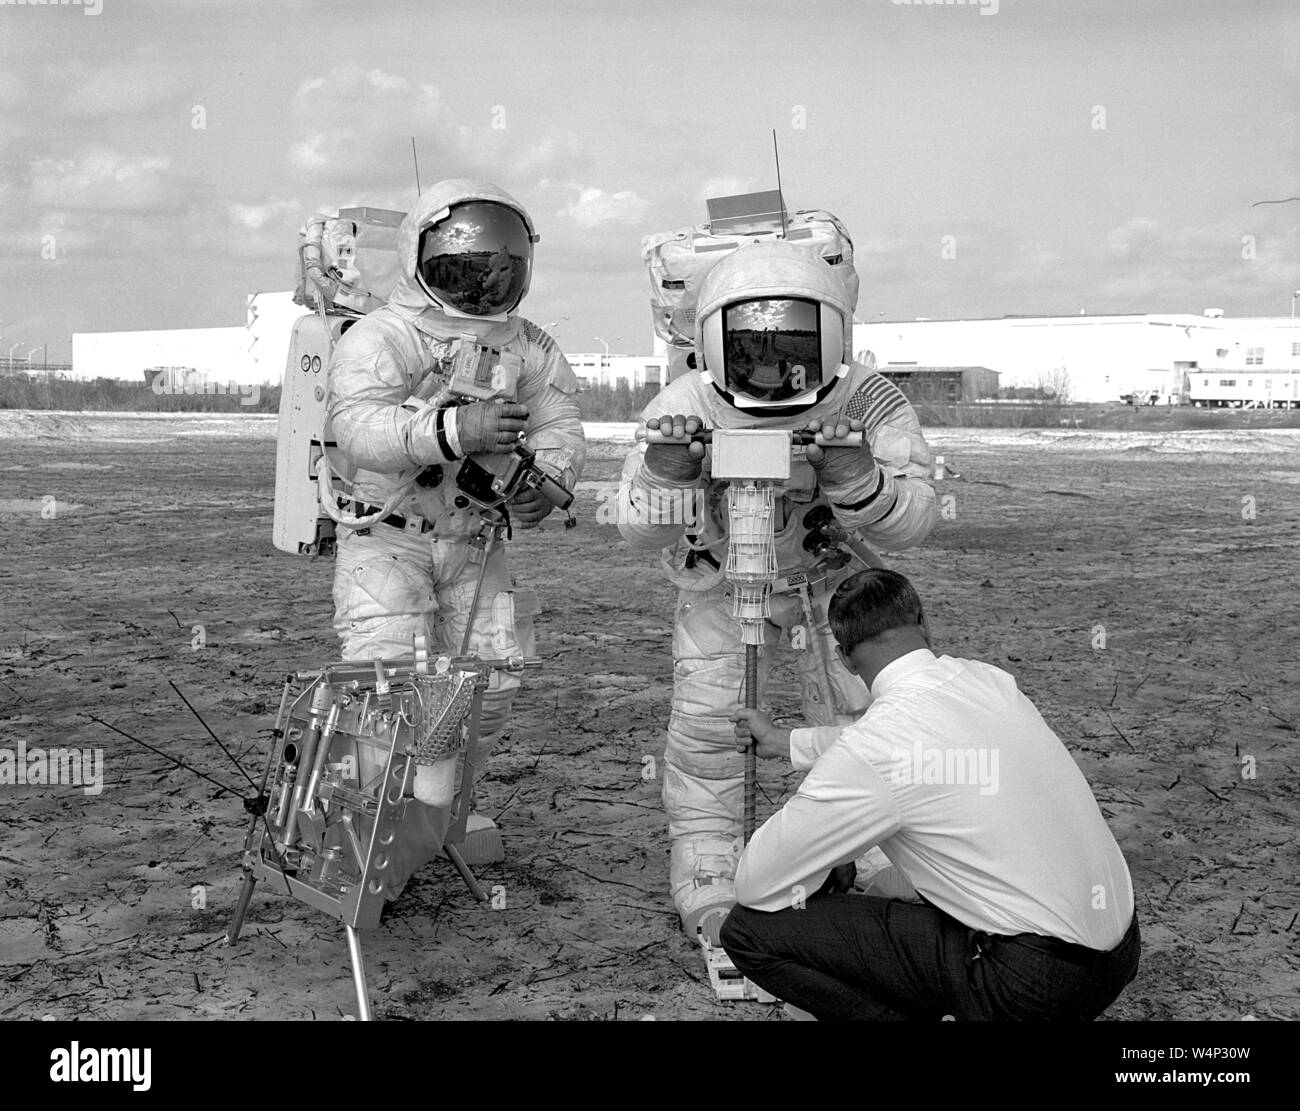 Apollo 13 membri di equipaggio incluso modulo lunare pilota W Fred Haise Jr e Apollo 13 comandante James un Lovell Jr prova un nucleo motorizzato sampler, 28 gennaio 1970. Immagine cortesia Nazionale Aeronautica e Spaziale Administration (NASA). () Foto Stock